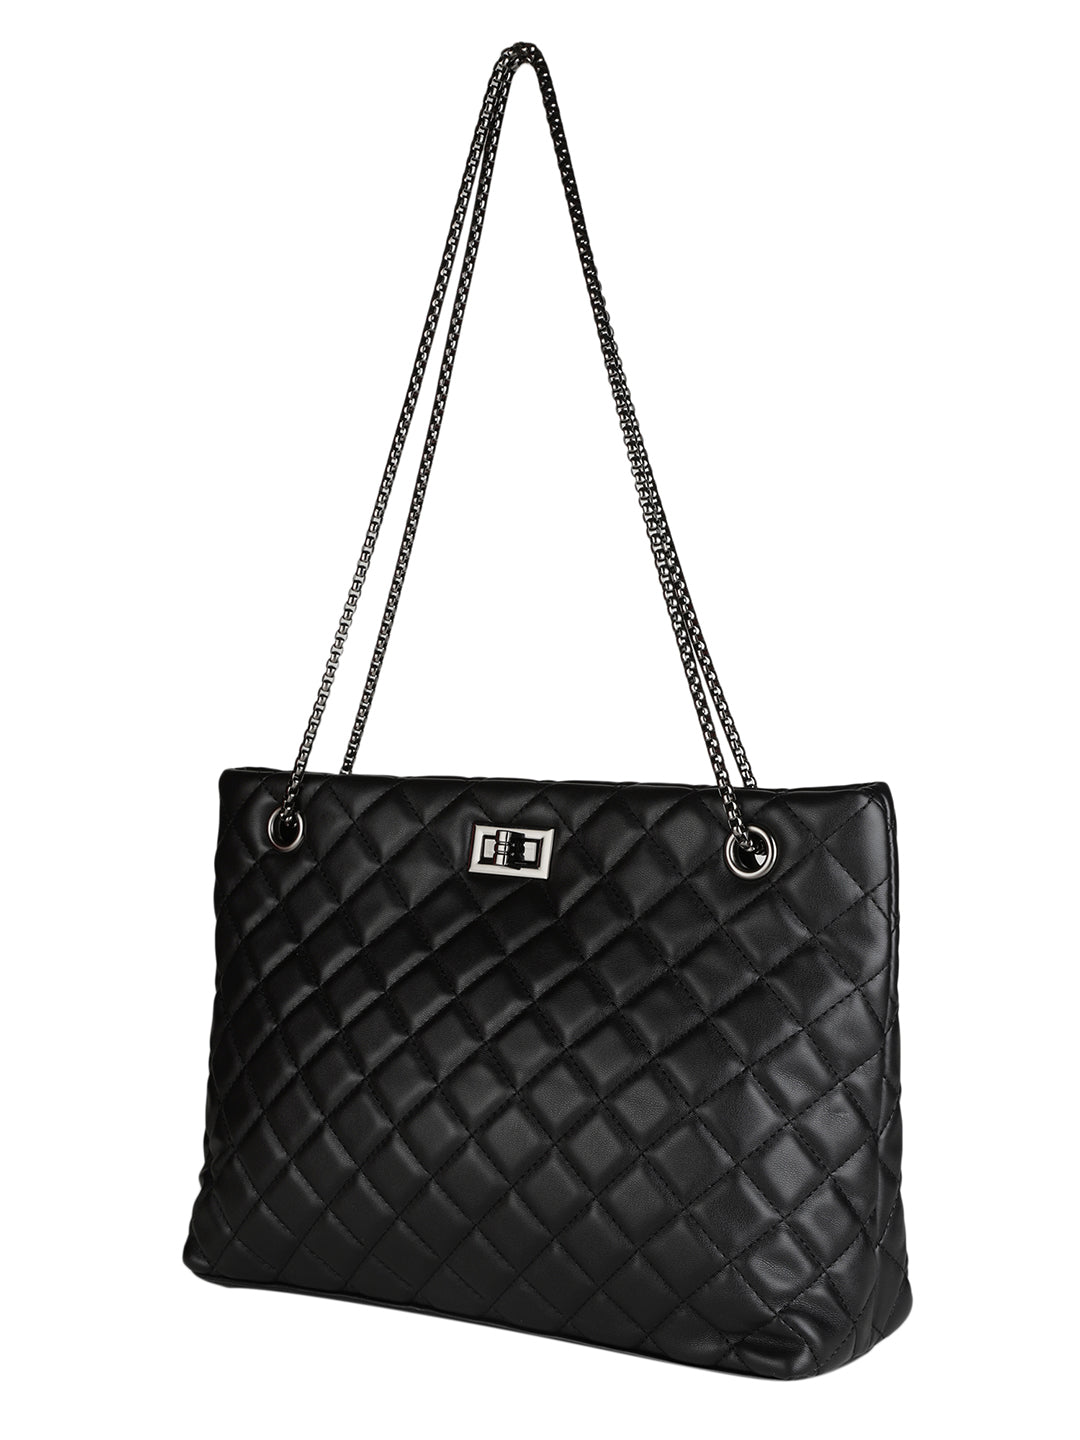 MINI WESST Black Casual Solid Sling Bag(MWHB152BL) – Miniwesst